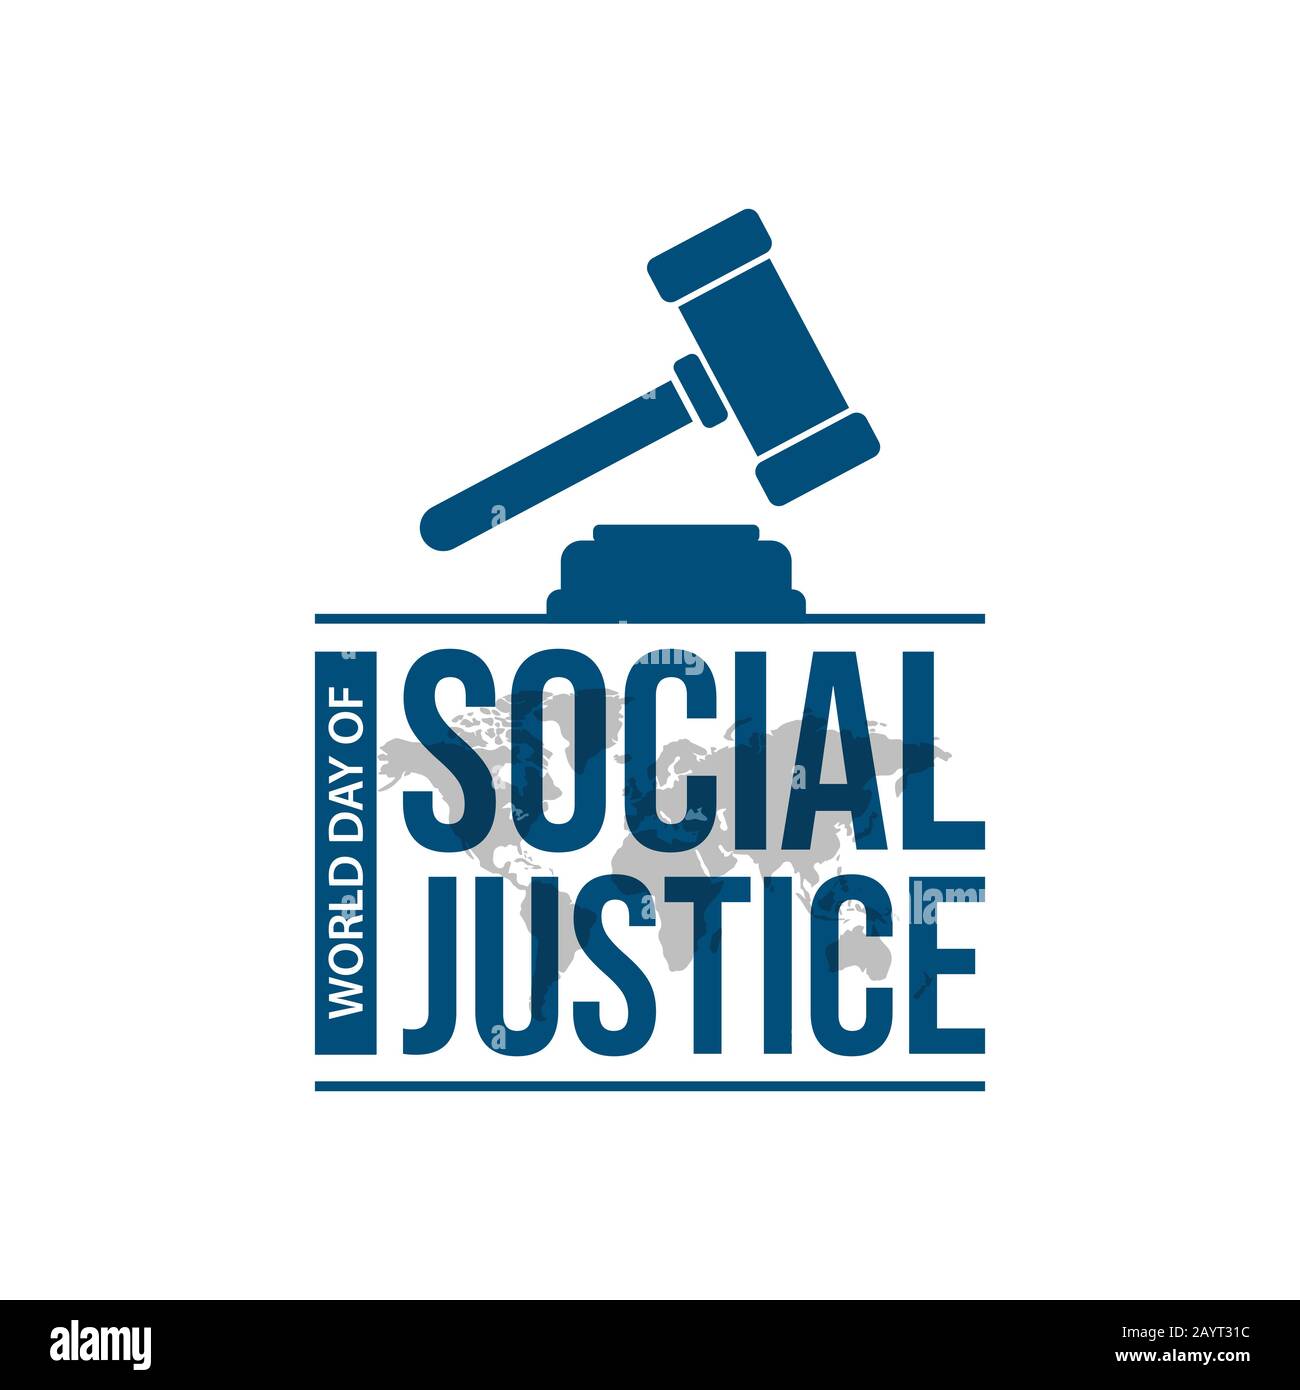 Welttag soziale Gerechtigkeit am 20. februar Typografie Vektorbild. Weltjustiz Tag Feier mit Hammer of Justice Symbol Typografie Schriftzug Logo V Stock Vektor